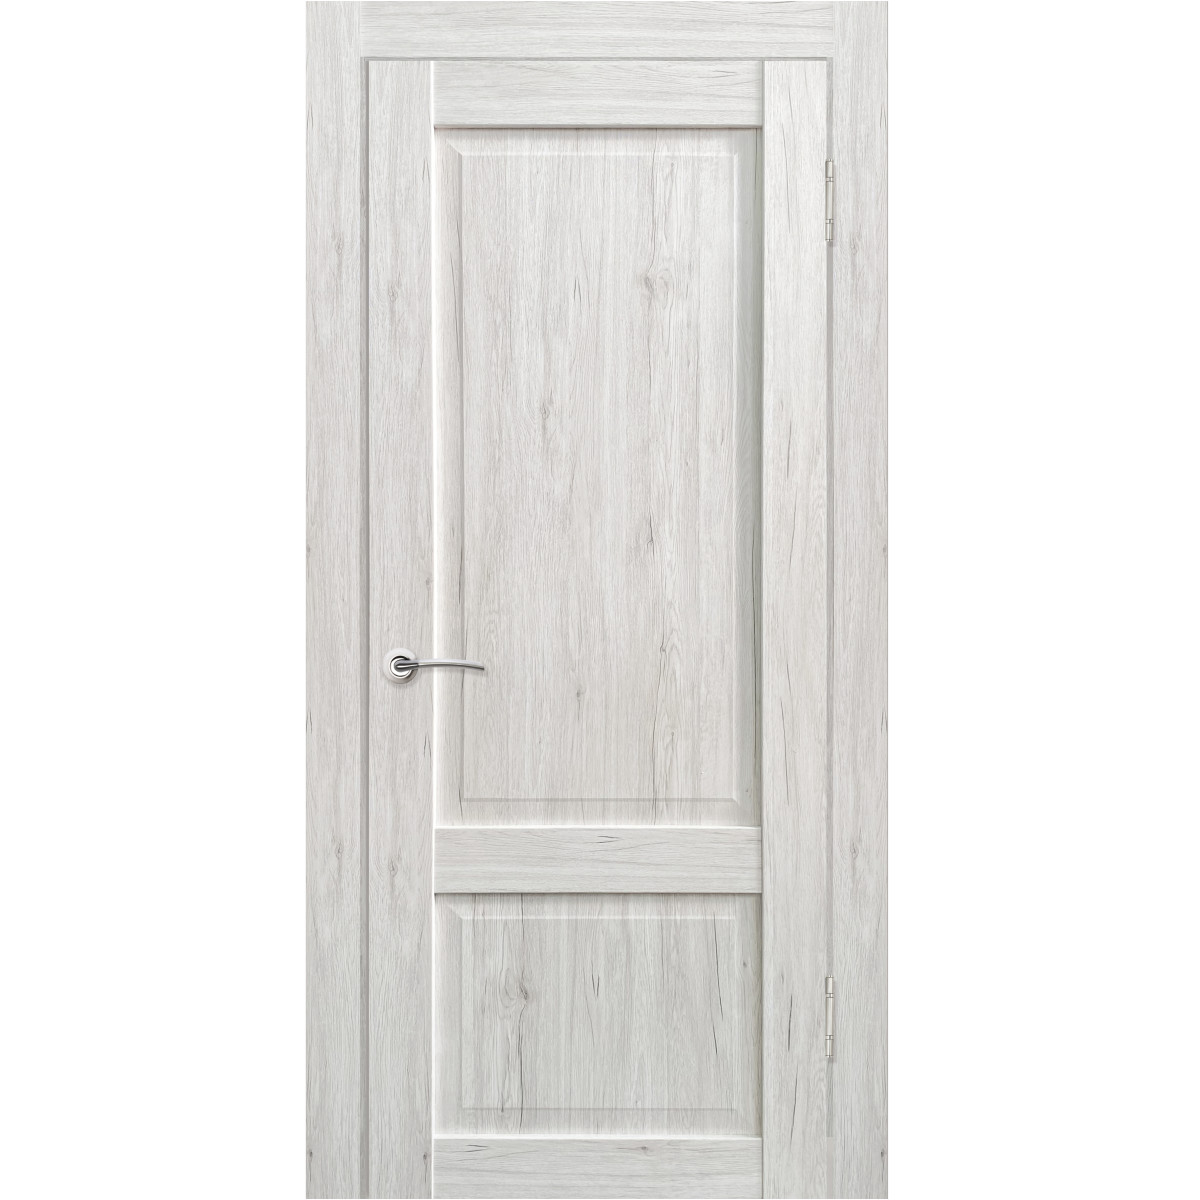 Дверь межкомнатная Амелия 90х200 см с фурнитурой, ПВХ, цвет рустик серый